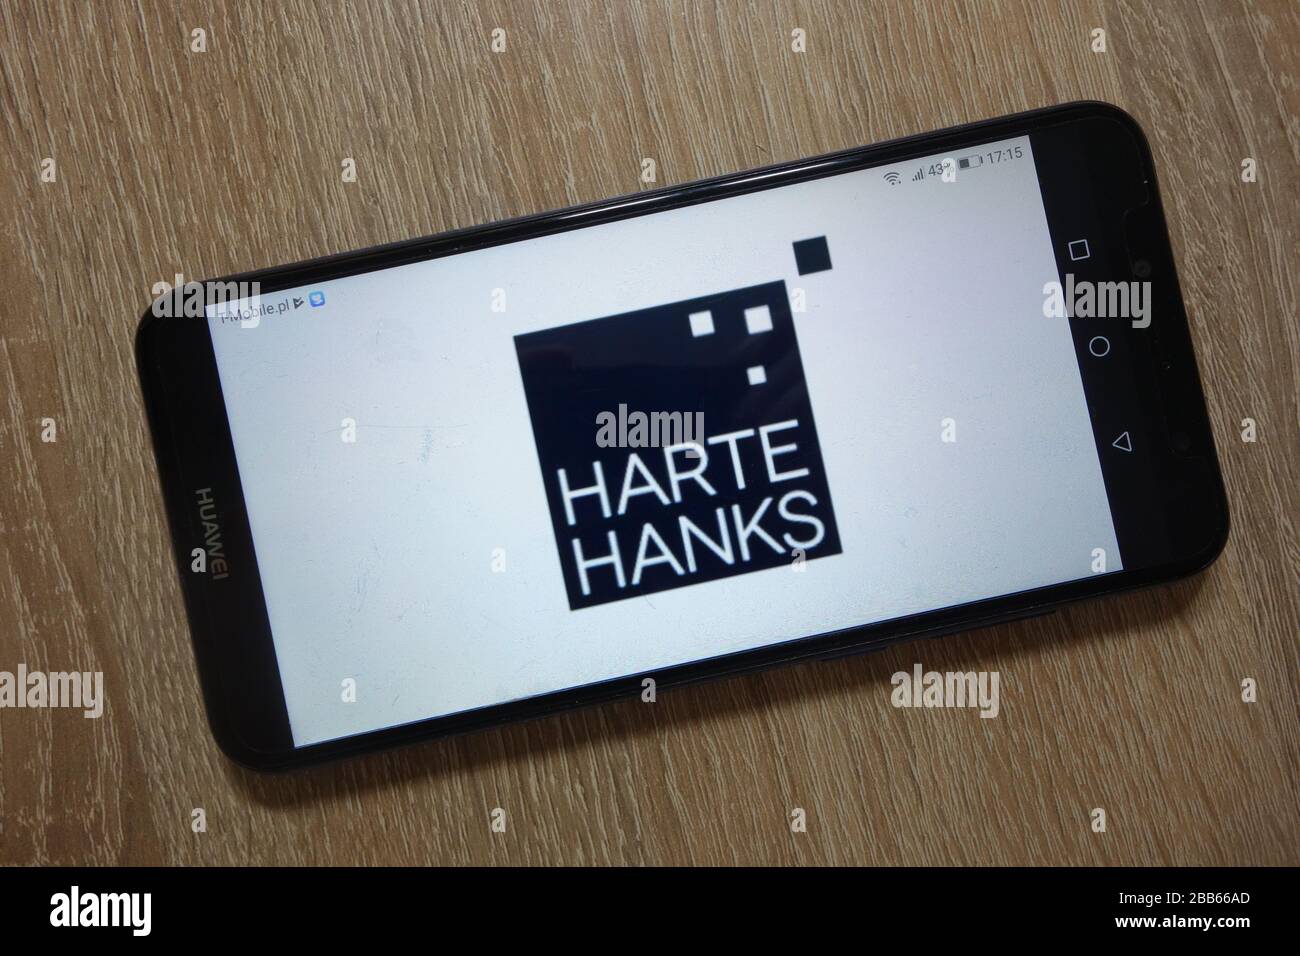 Logo Harte Hanks, Inc. Affiché sur le smartphone Banque D'Images